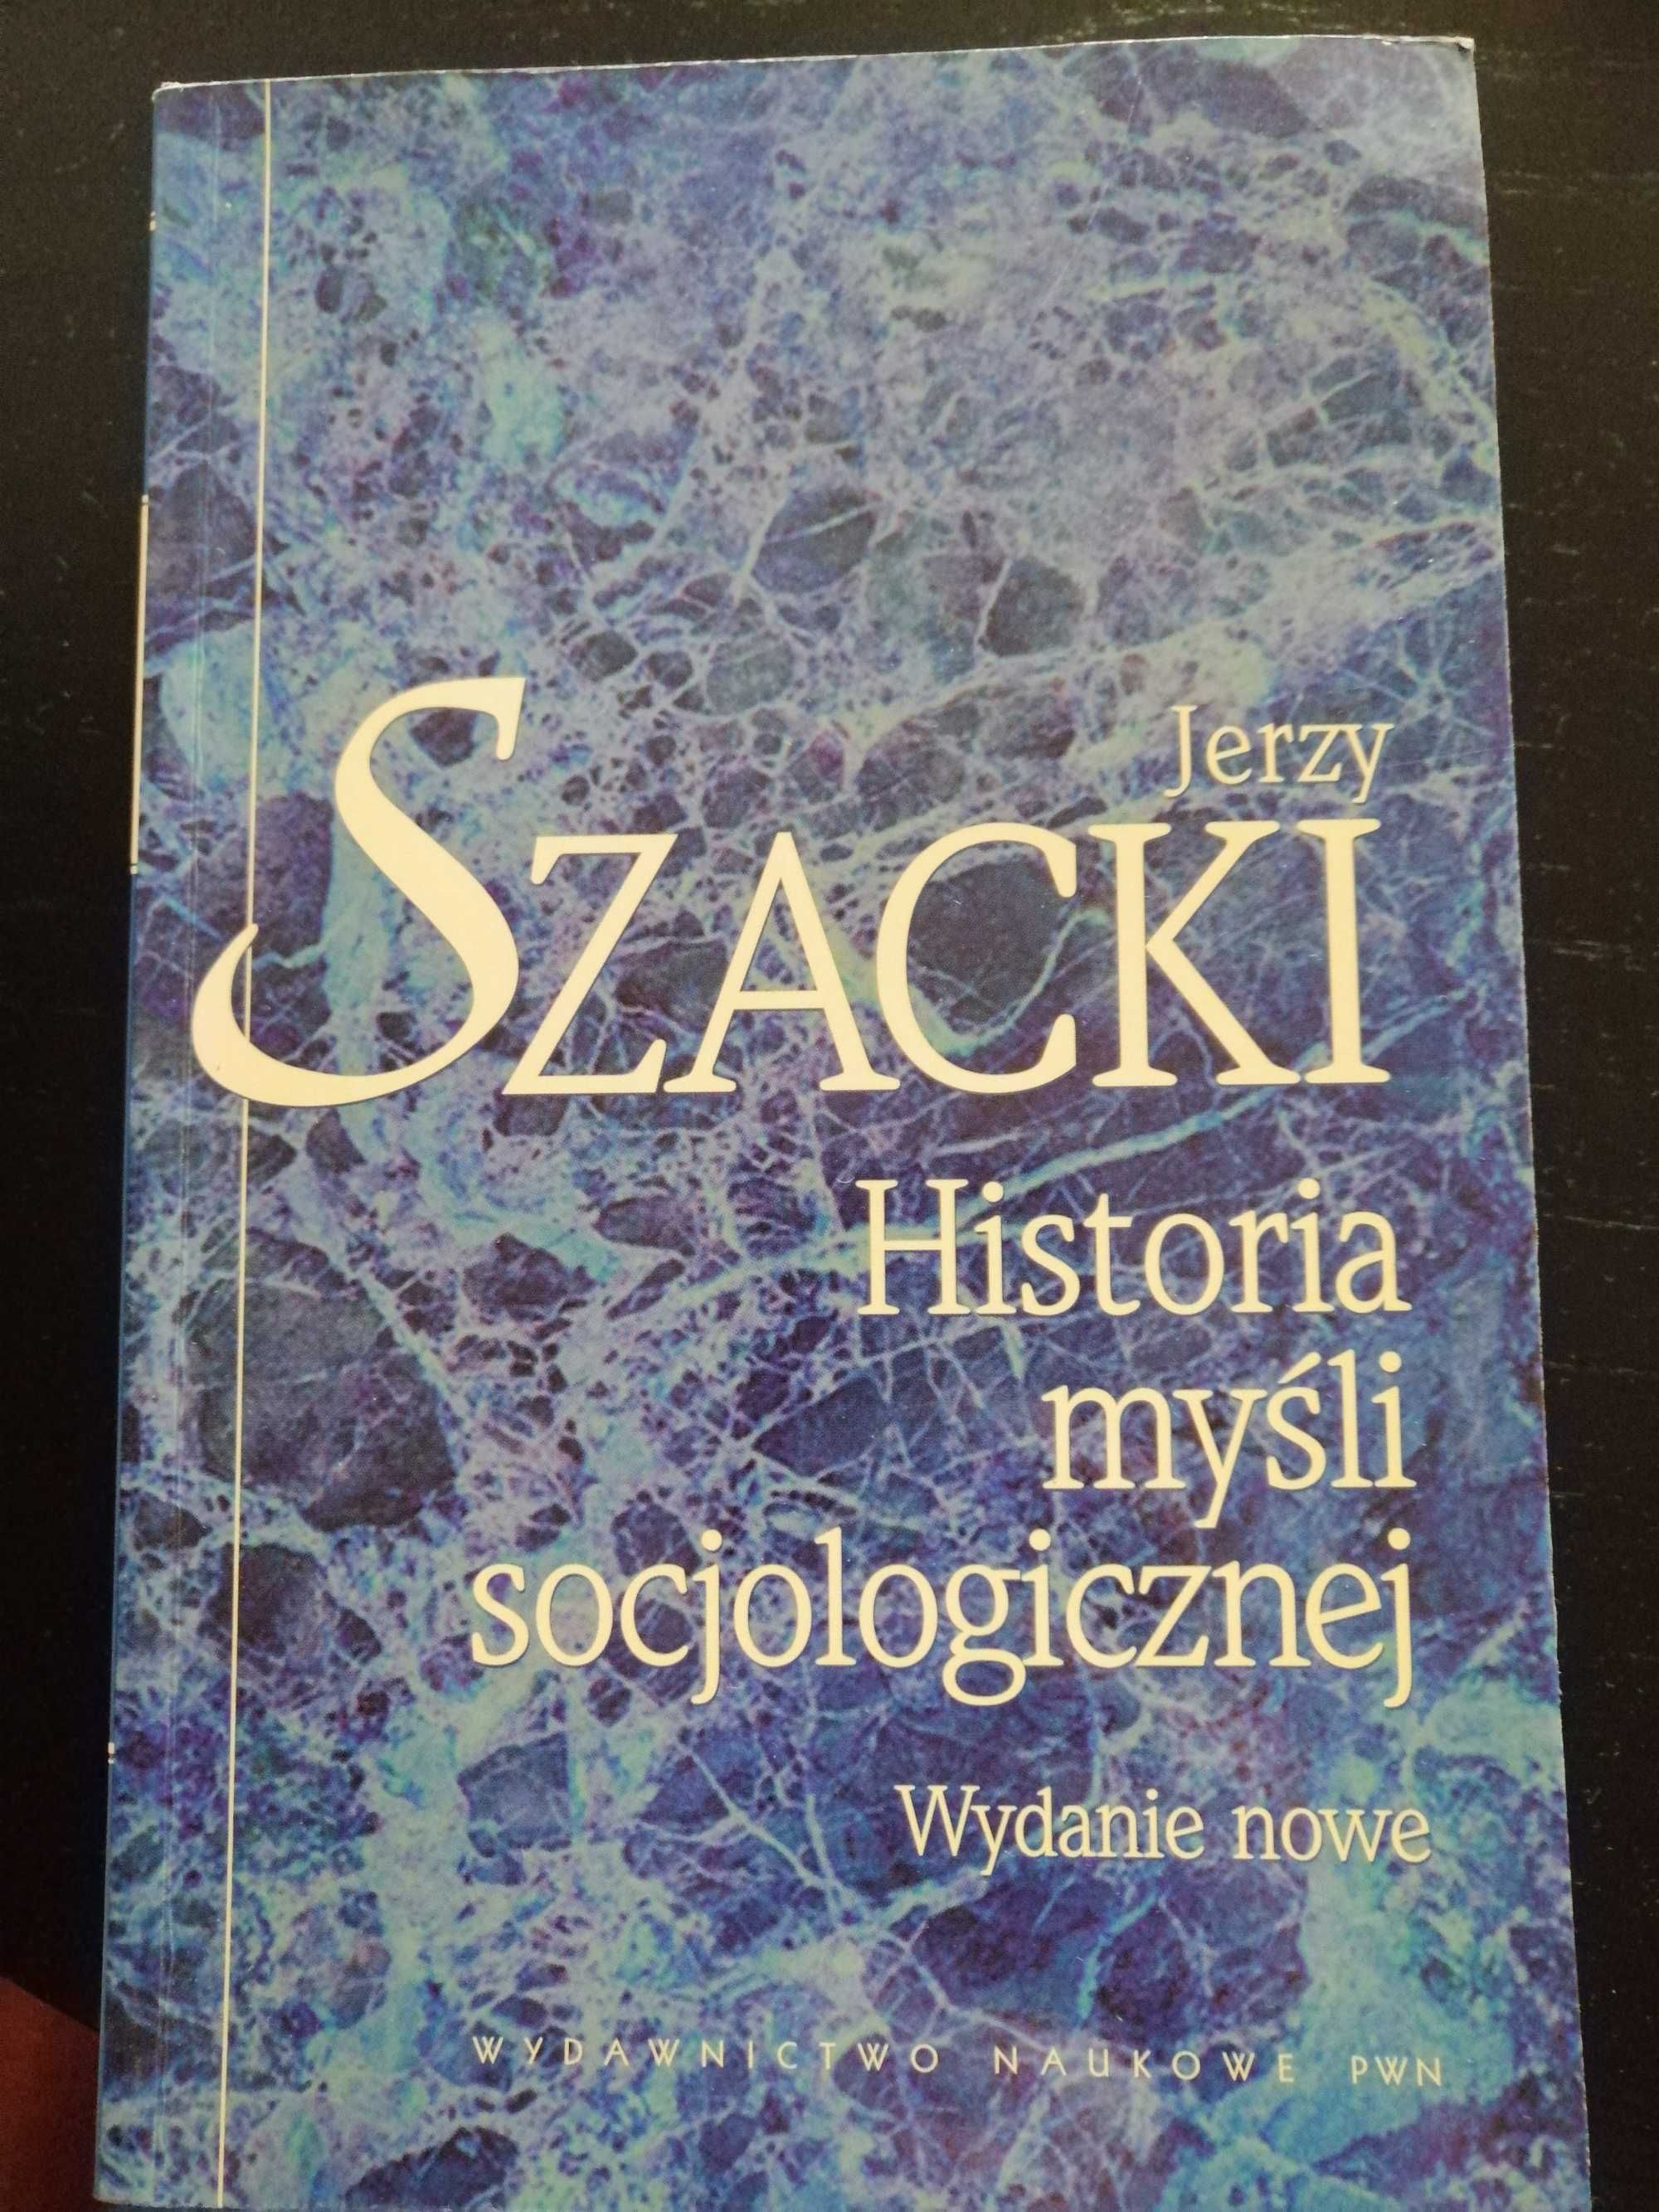 "Historia myśli socjologicznej" J. Szacki